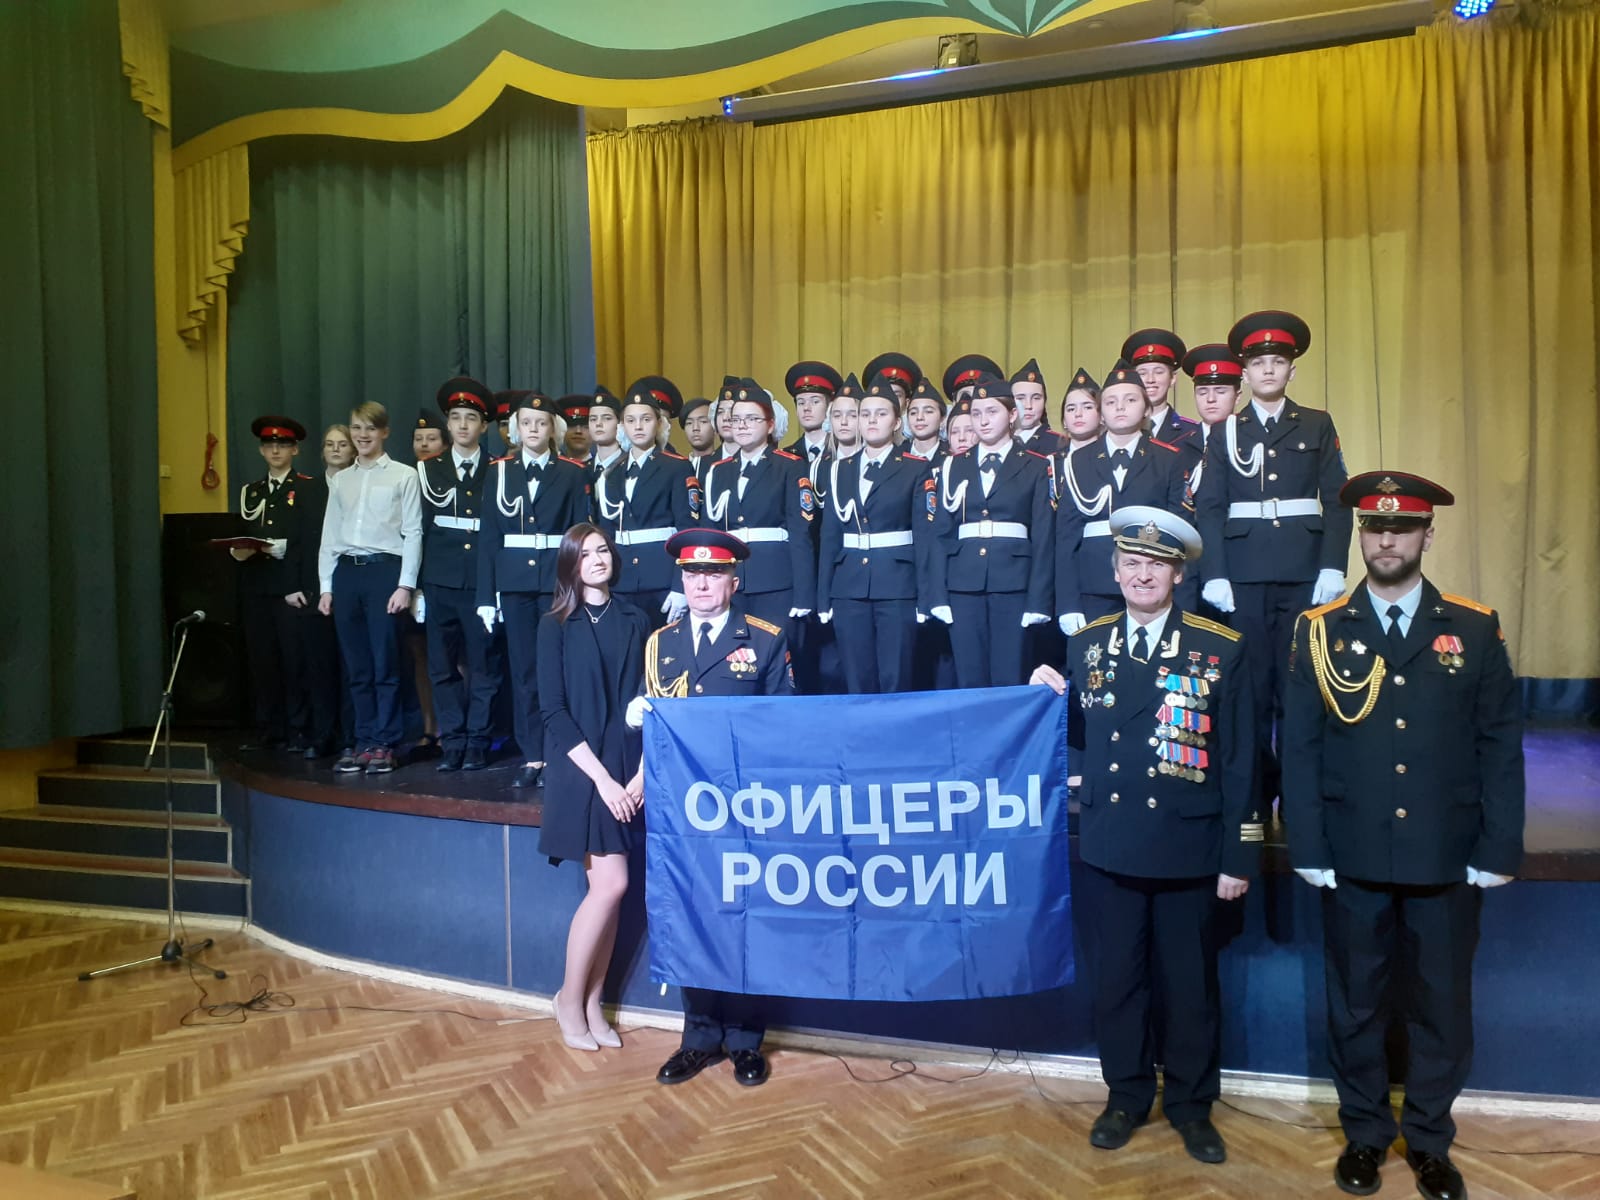 Офицеры России Зеленоград